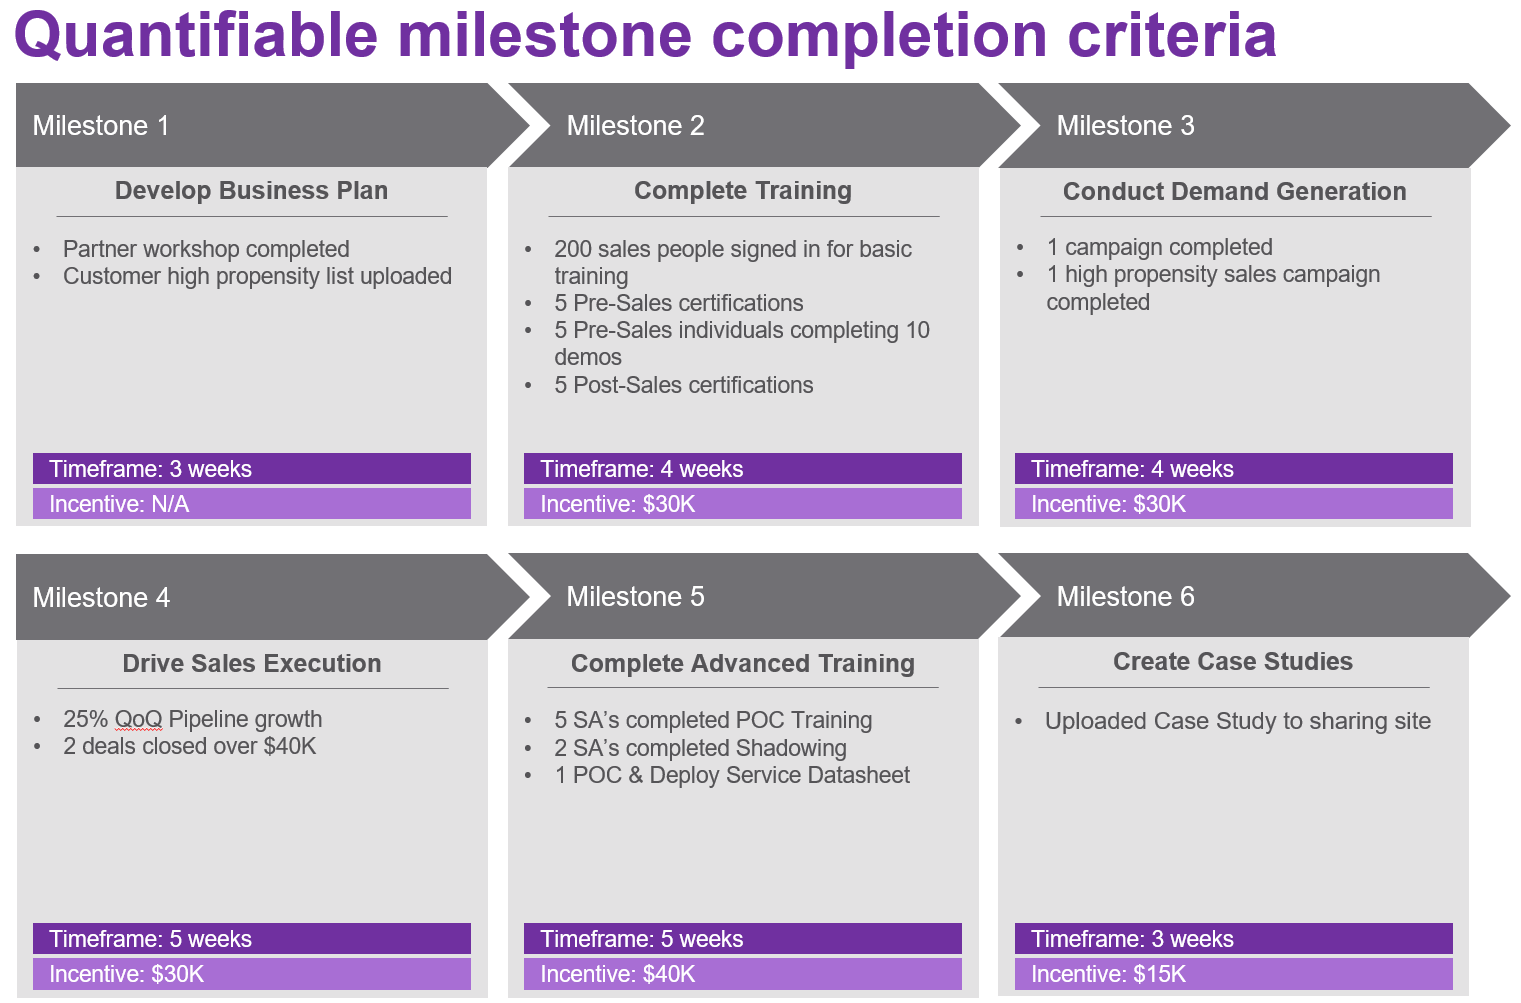 Quantifiable milestone completion criteria table